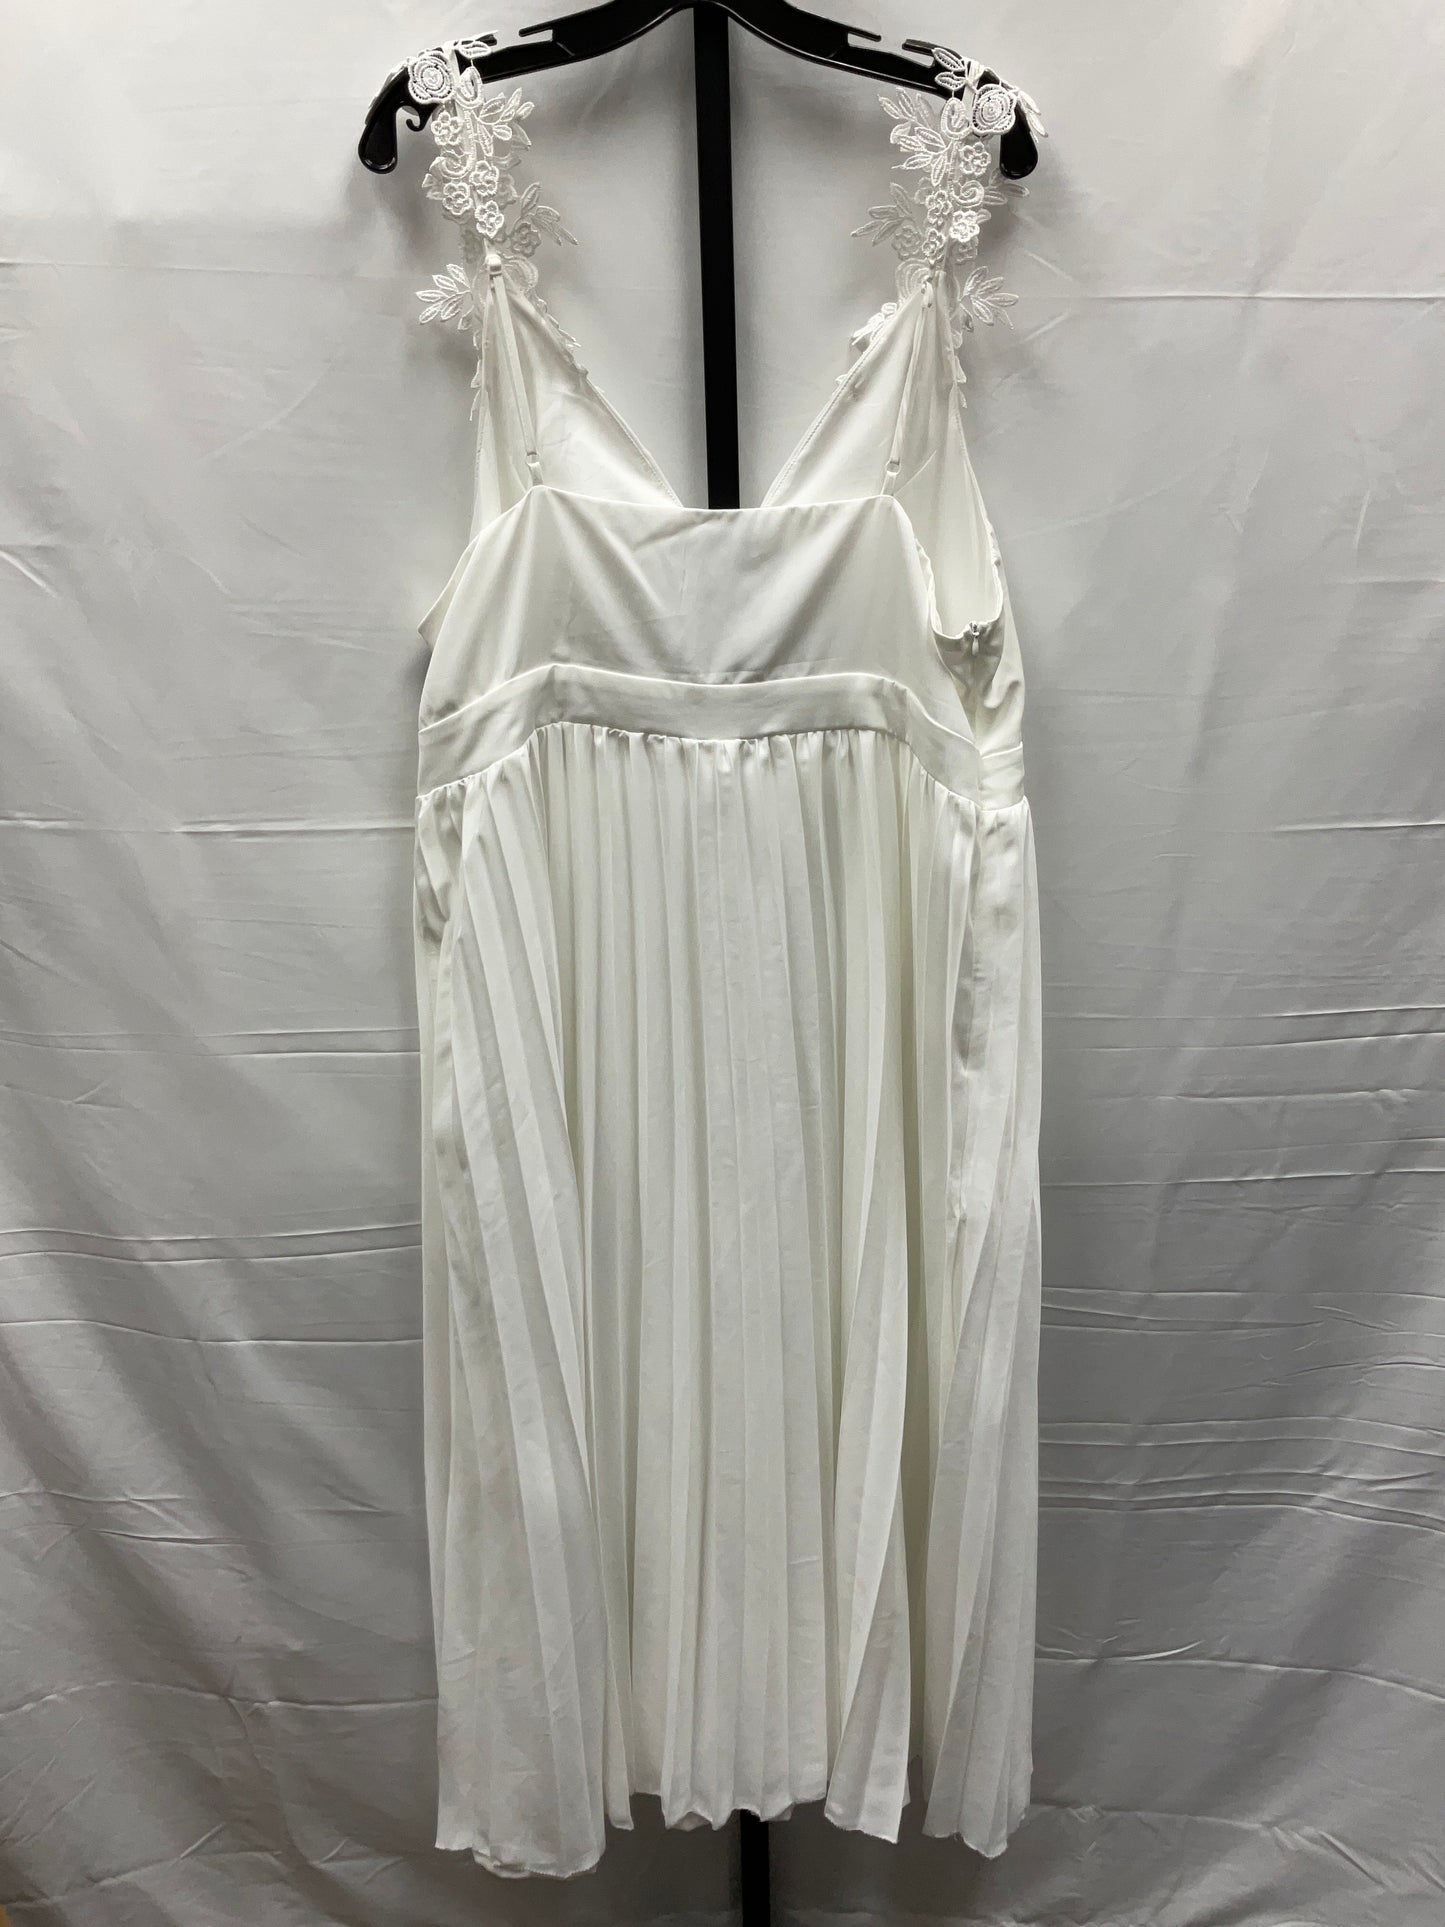 Dress Casual Midi By Shein  Size: 3x